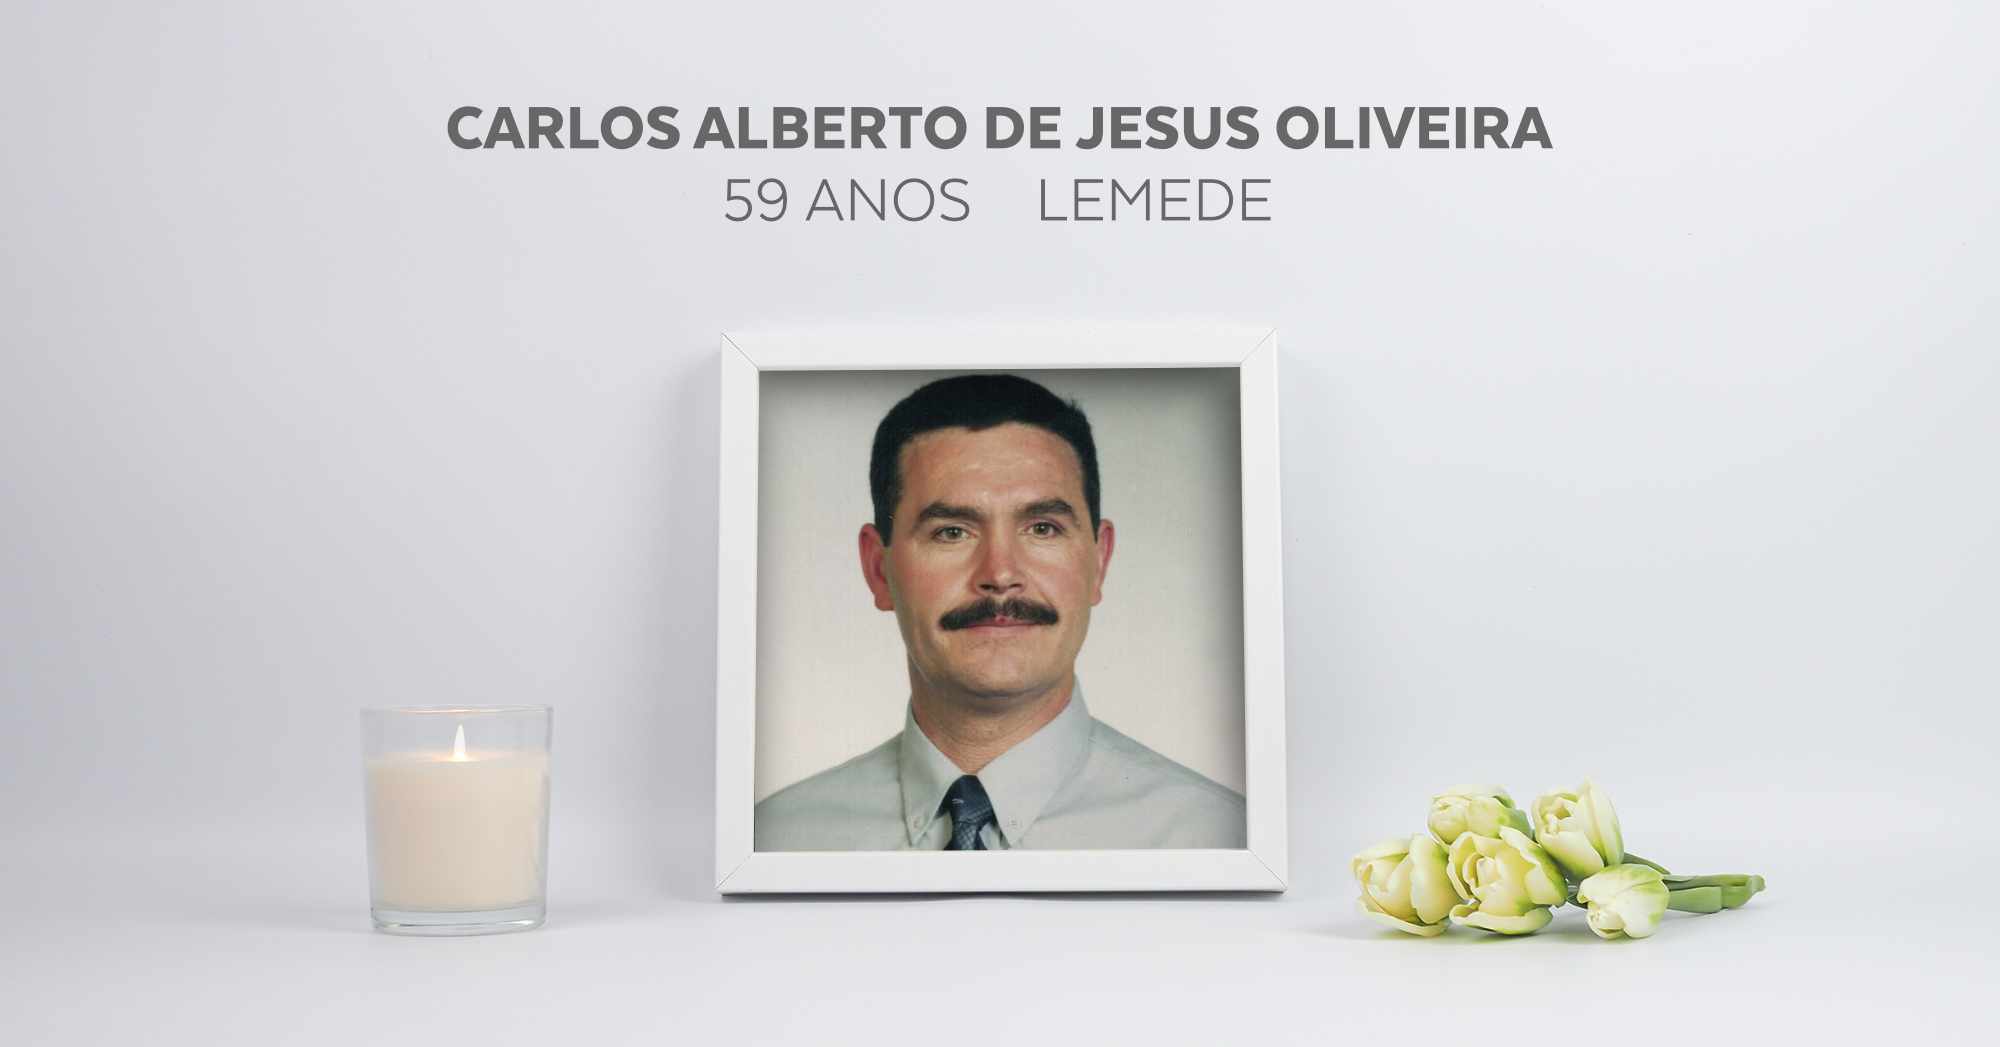 Carlos Alberto de Jesus Oliveira